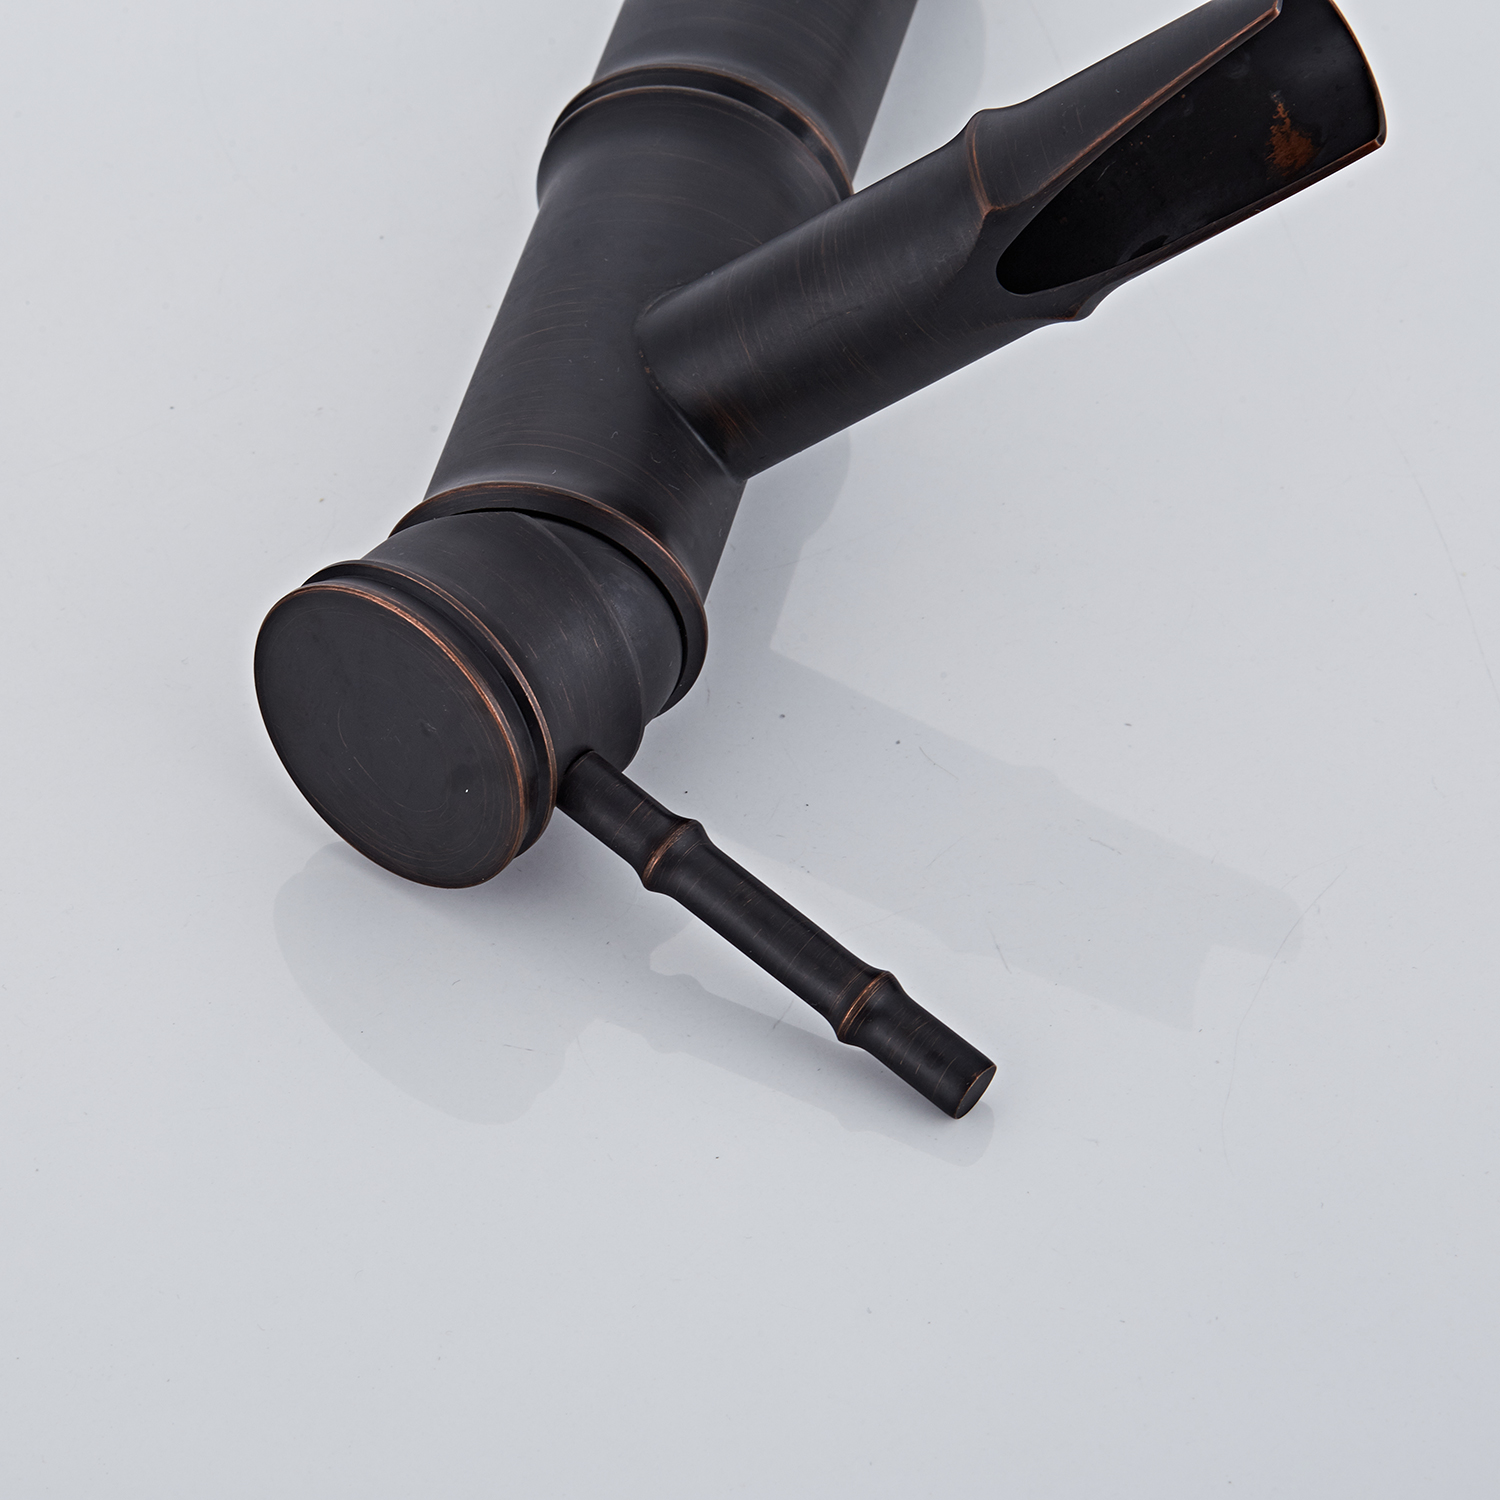 Черный современный минималистский атмосферный смеситель для раковины в семейном стиле бамбуковой формы (2)